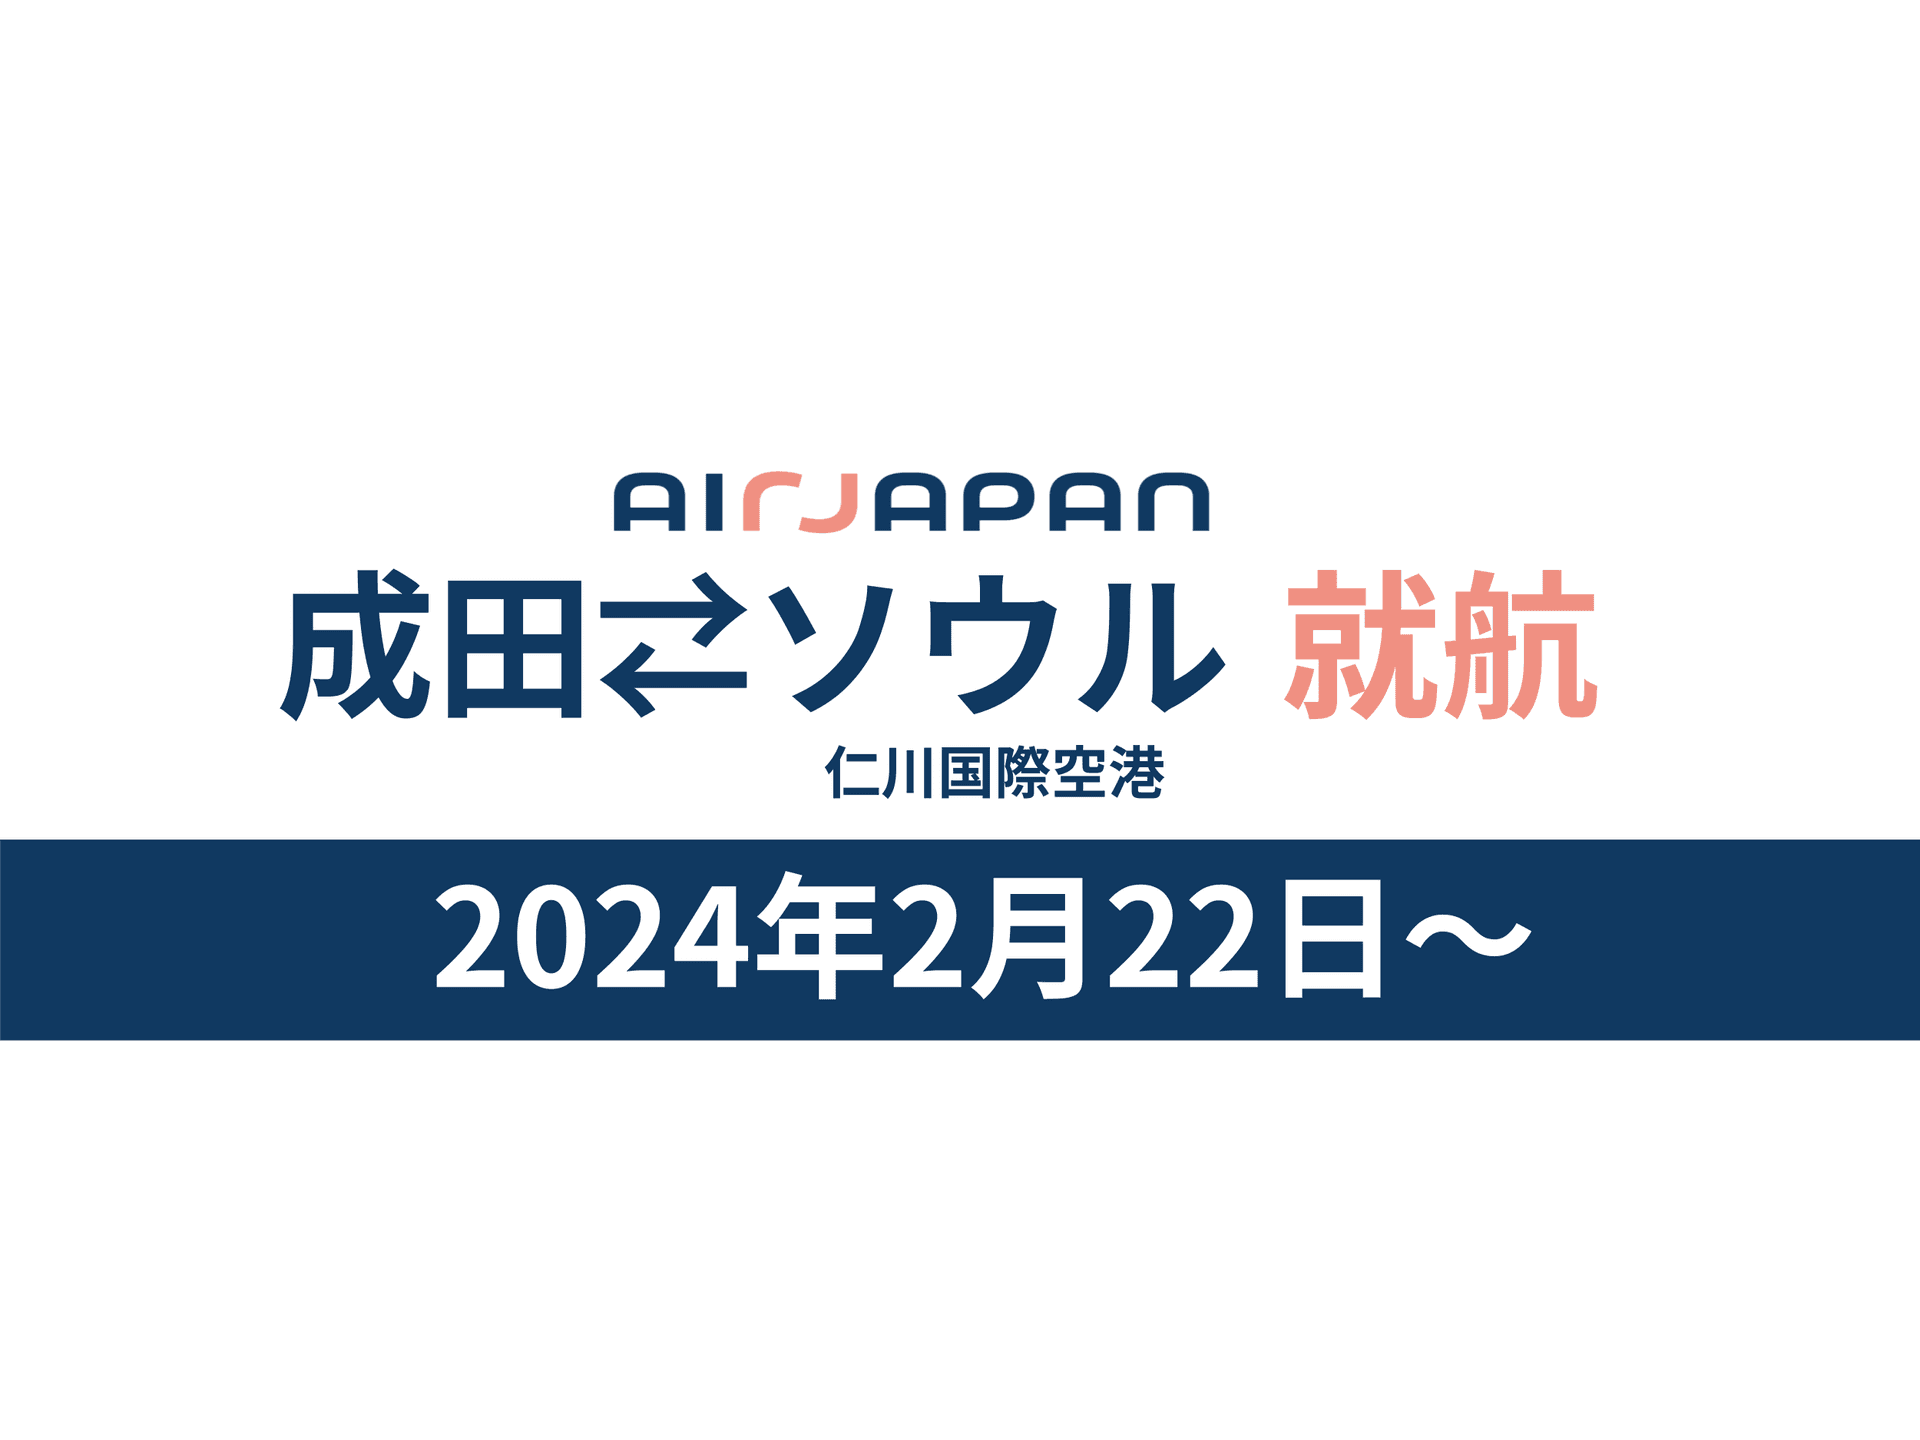 Airjapanは2024年2月22日（木）から成田、ソウル間の直行便を就航します。